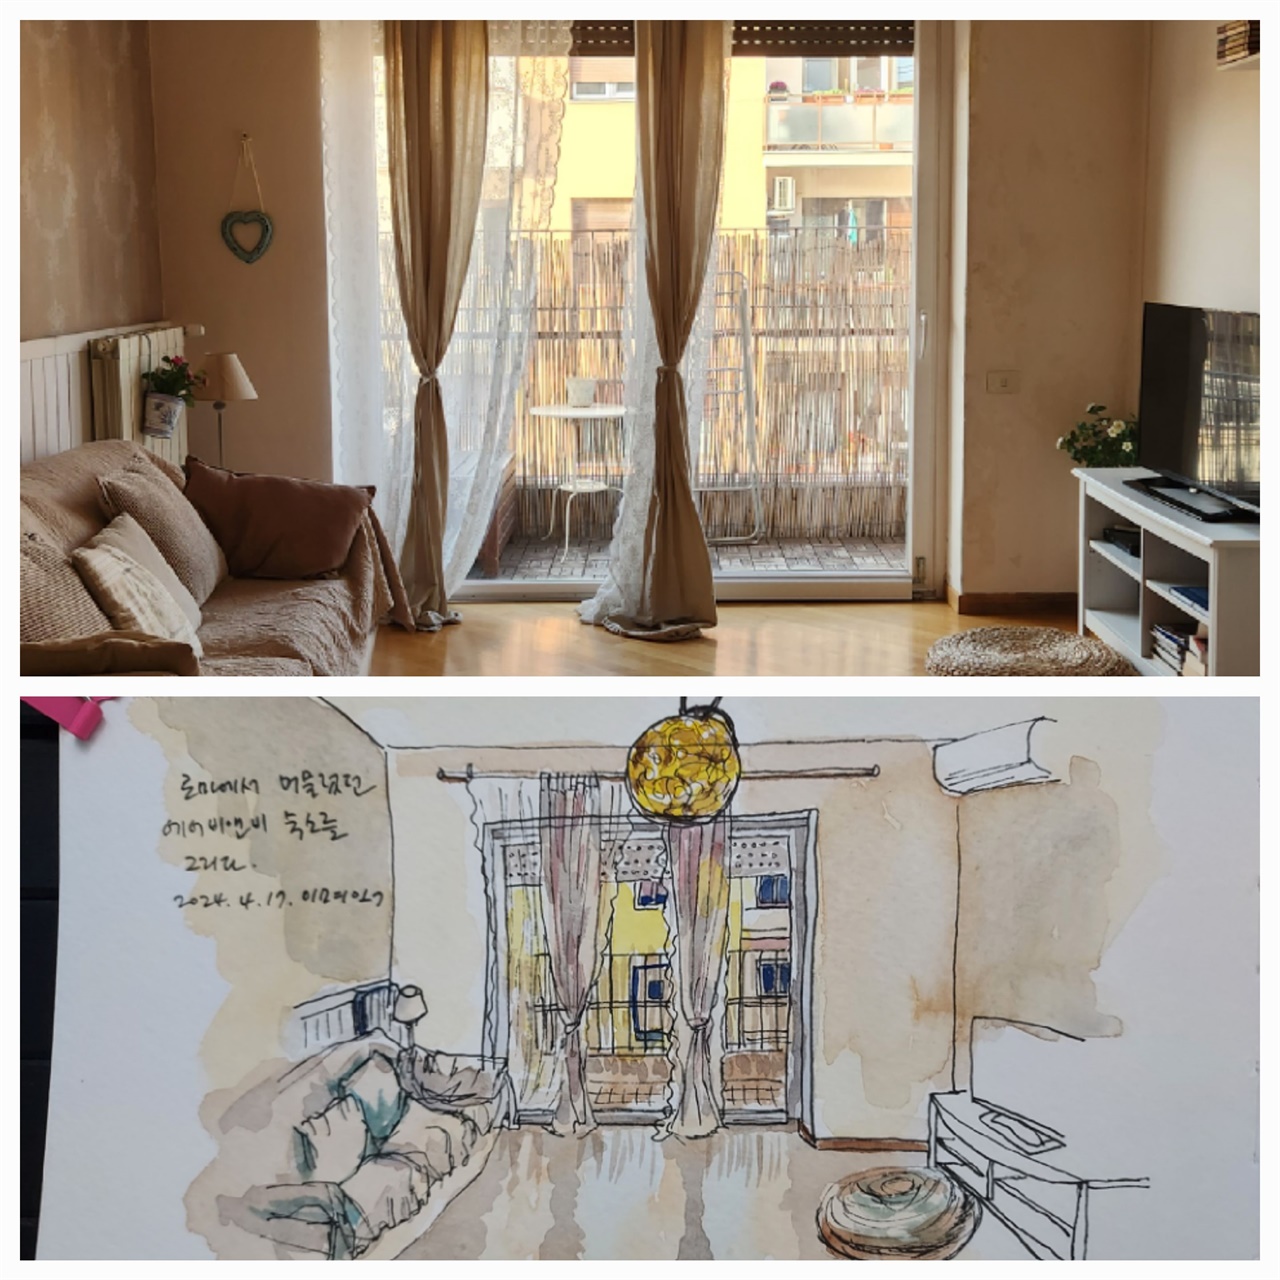 로마 에어비앤비 숙소를 어반스케치로 그렸습니다.